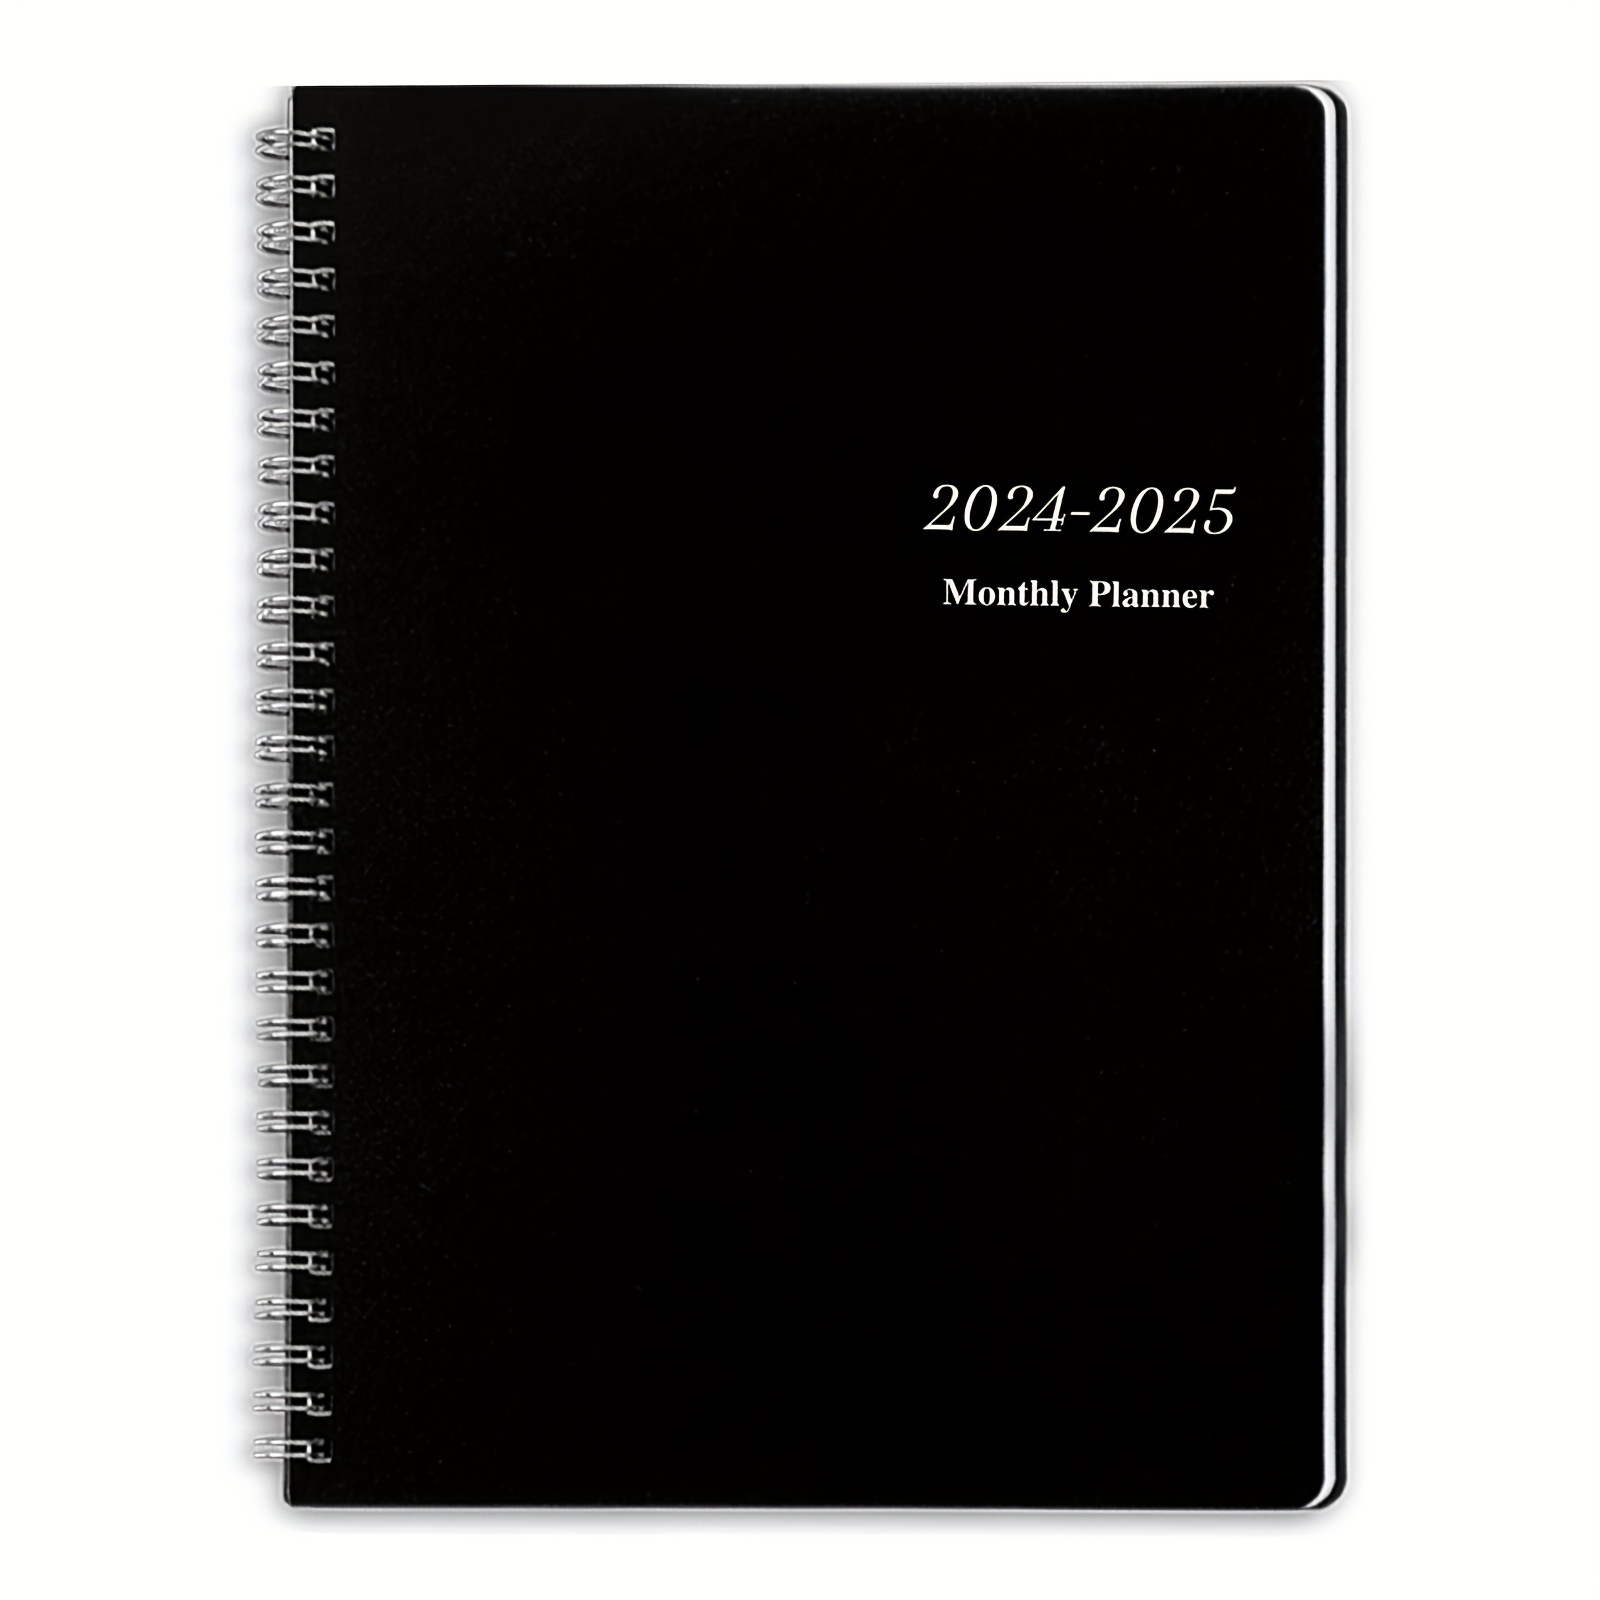 Agenda Mensuel 2024 2025: Organisateur de 2 Ans, 1 Mois sur 2 Pages, de  Janvier 2024 à Décembre 2025, Calendrier Mensuel, Idée Cadeau Homme Femme